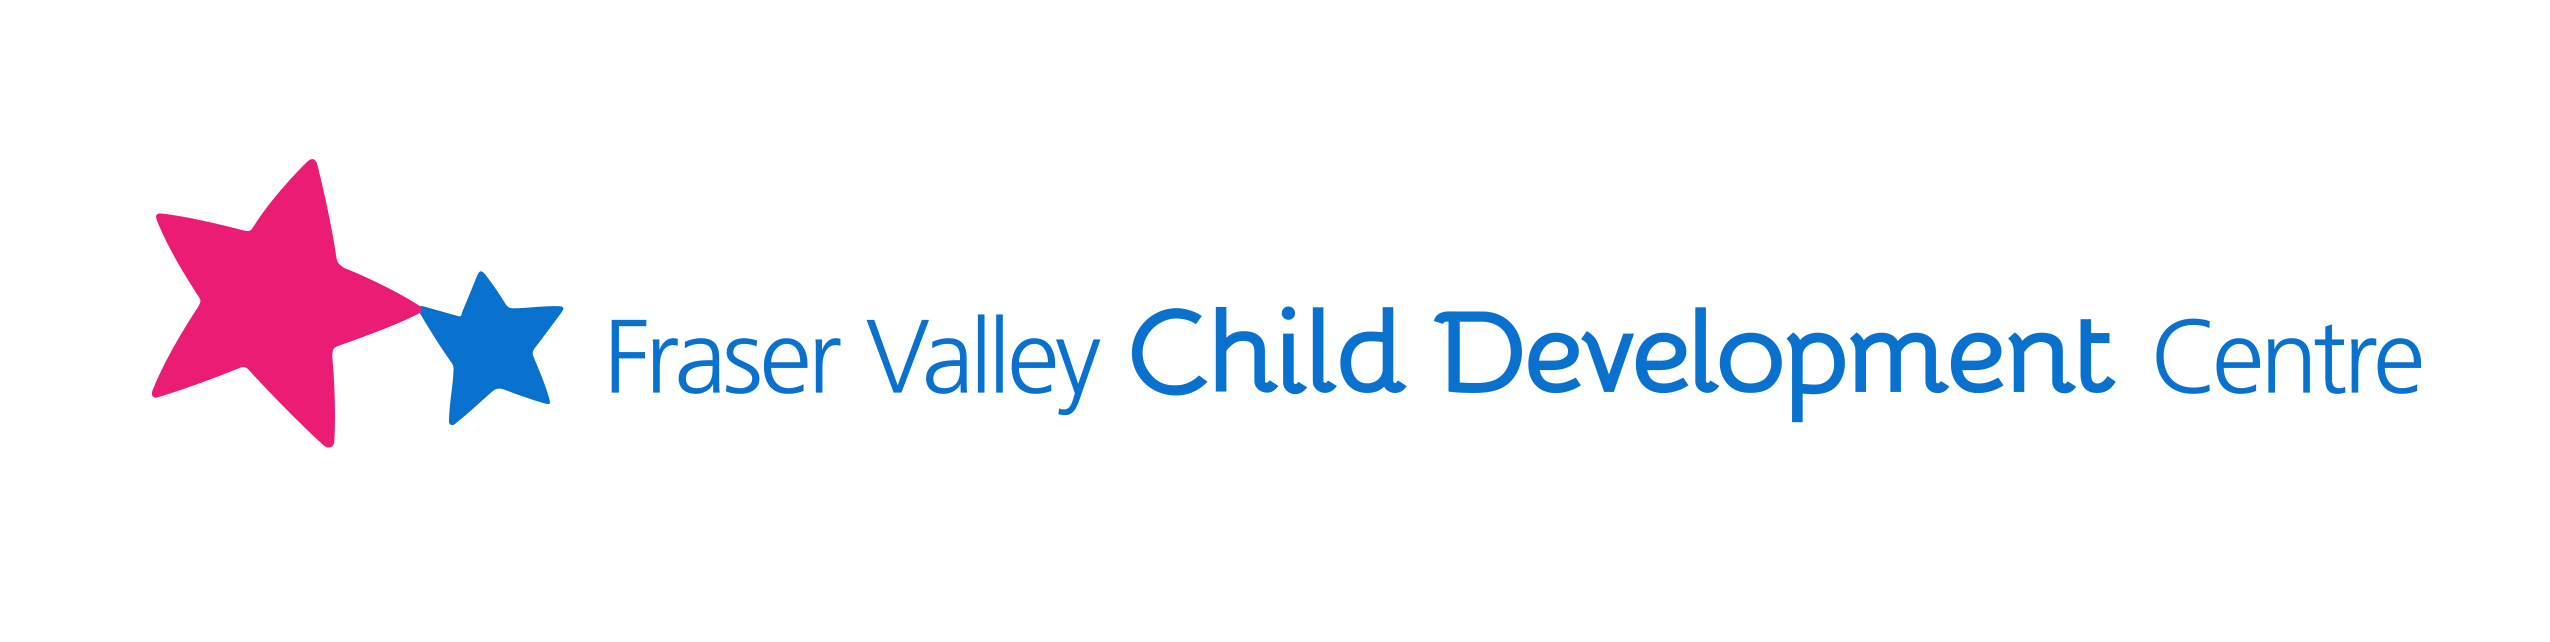 Fraser Valley Child Development Centre